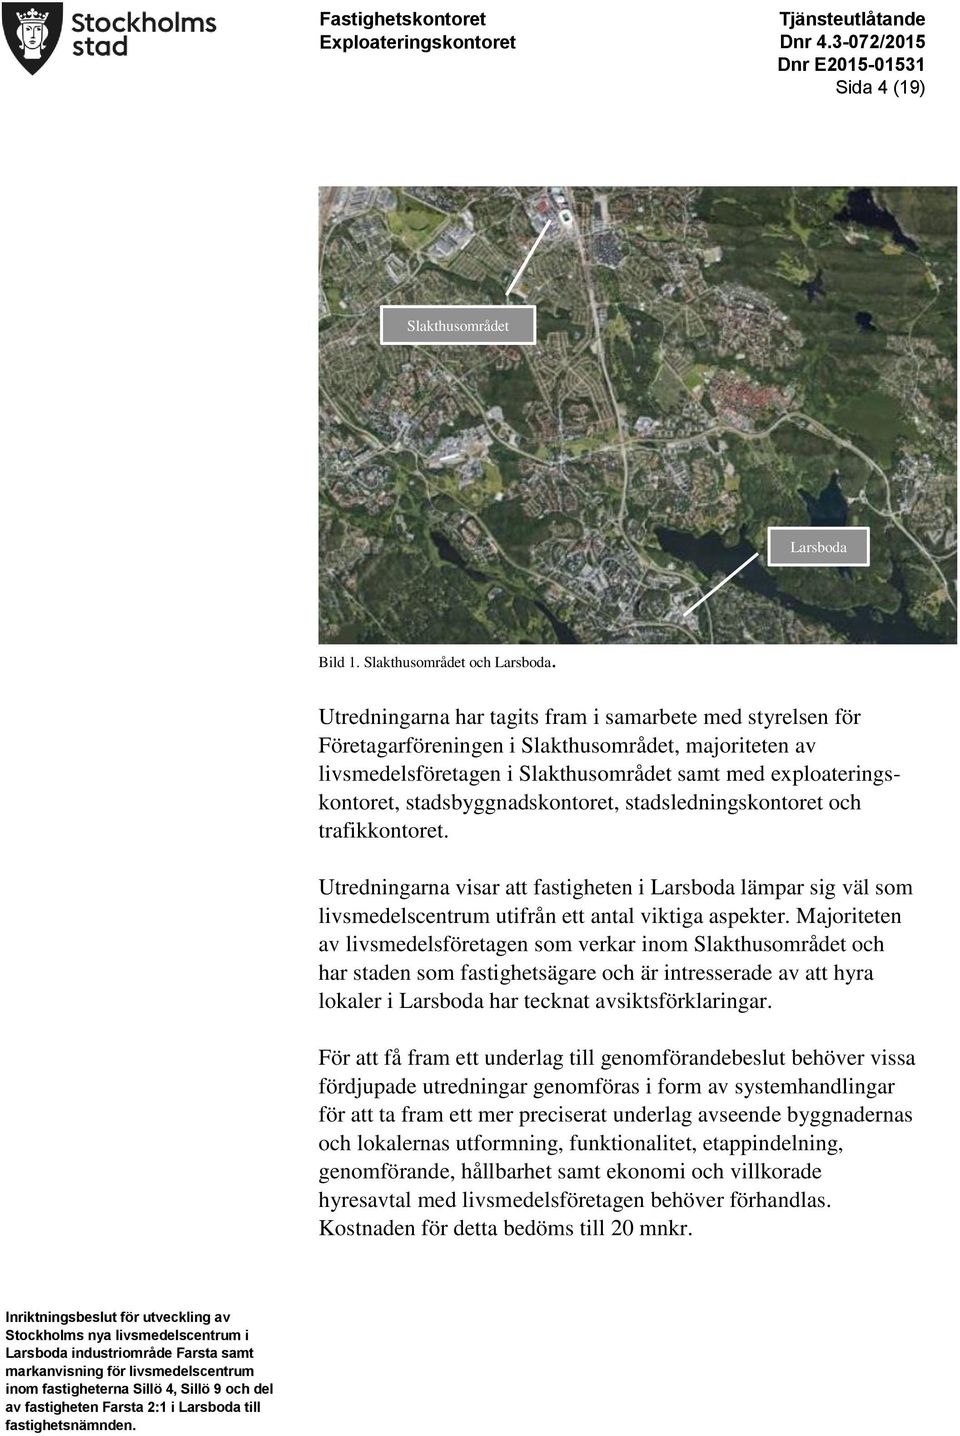 stadsbyggnadskontoret, stadsledningskontoret och trafikkontoret. Utredningarna visar att fastigheten i Larsboda lämpar sig väl som livsmedelscentrum utifrån ett antal viktiga aspekter.